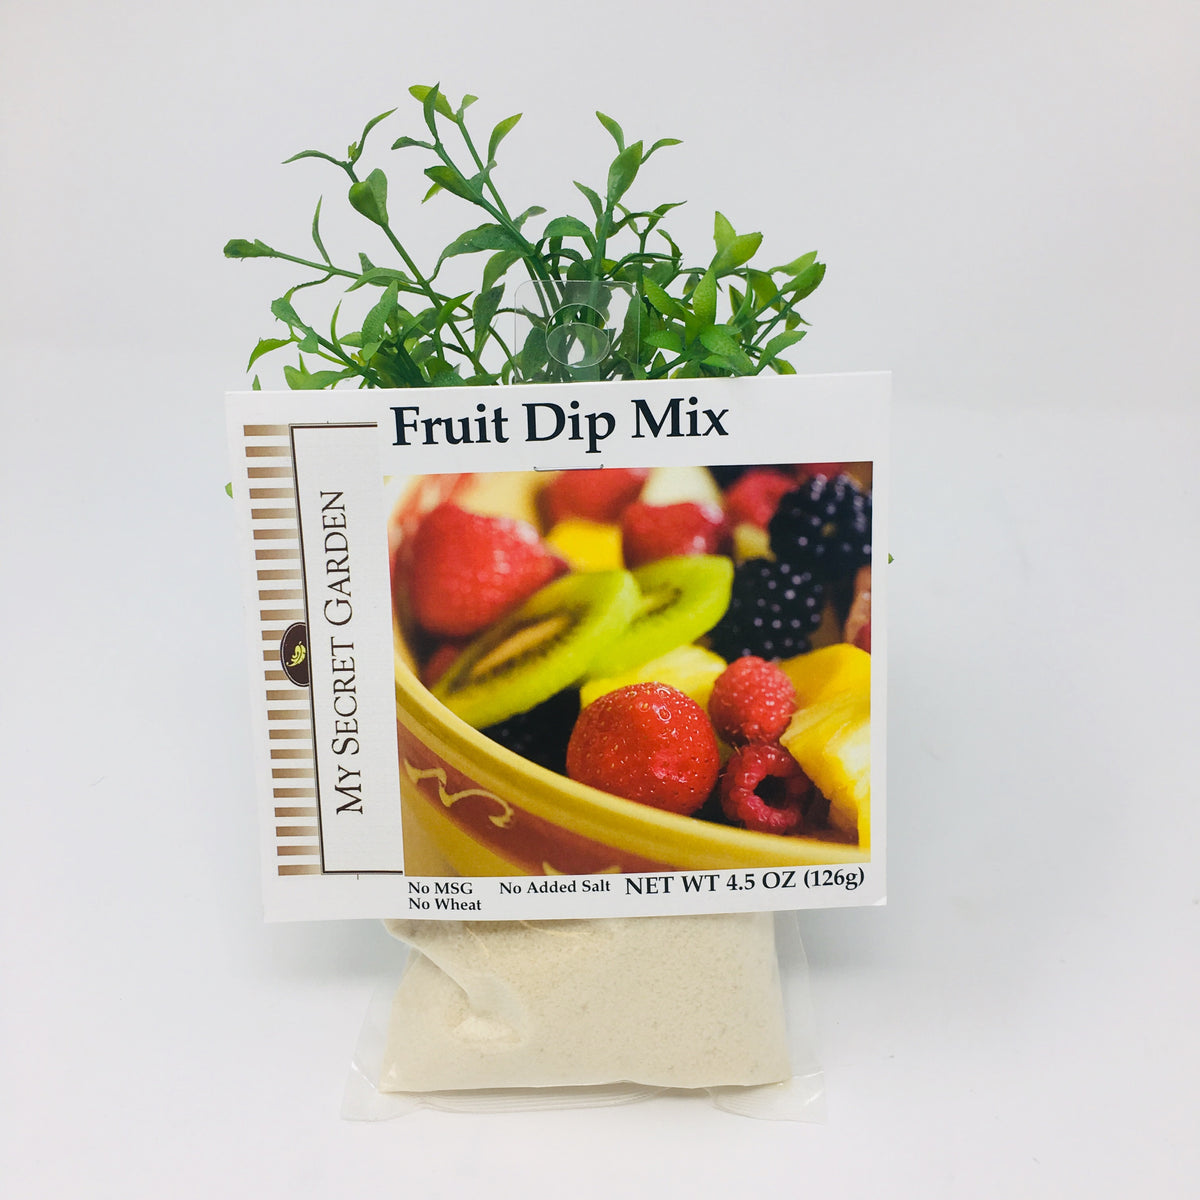 Fruit Dip Mix